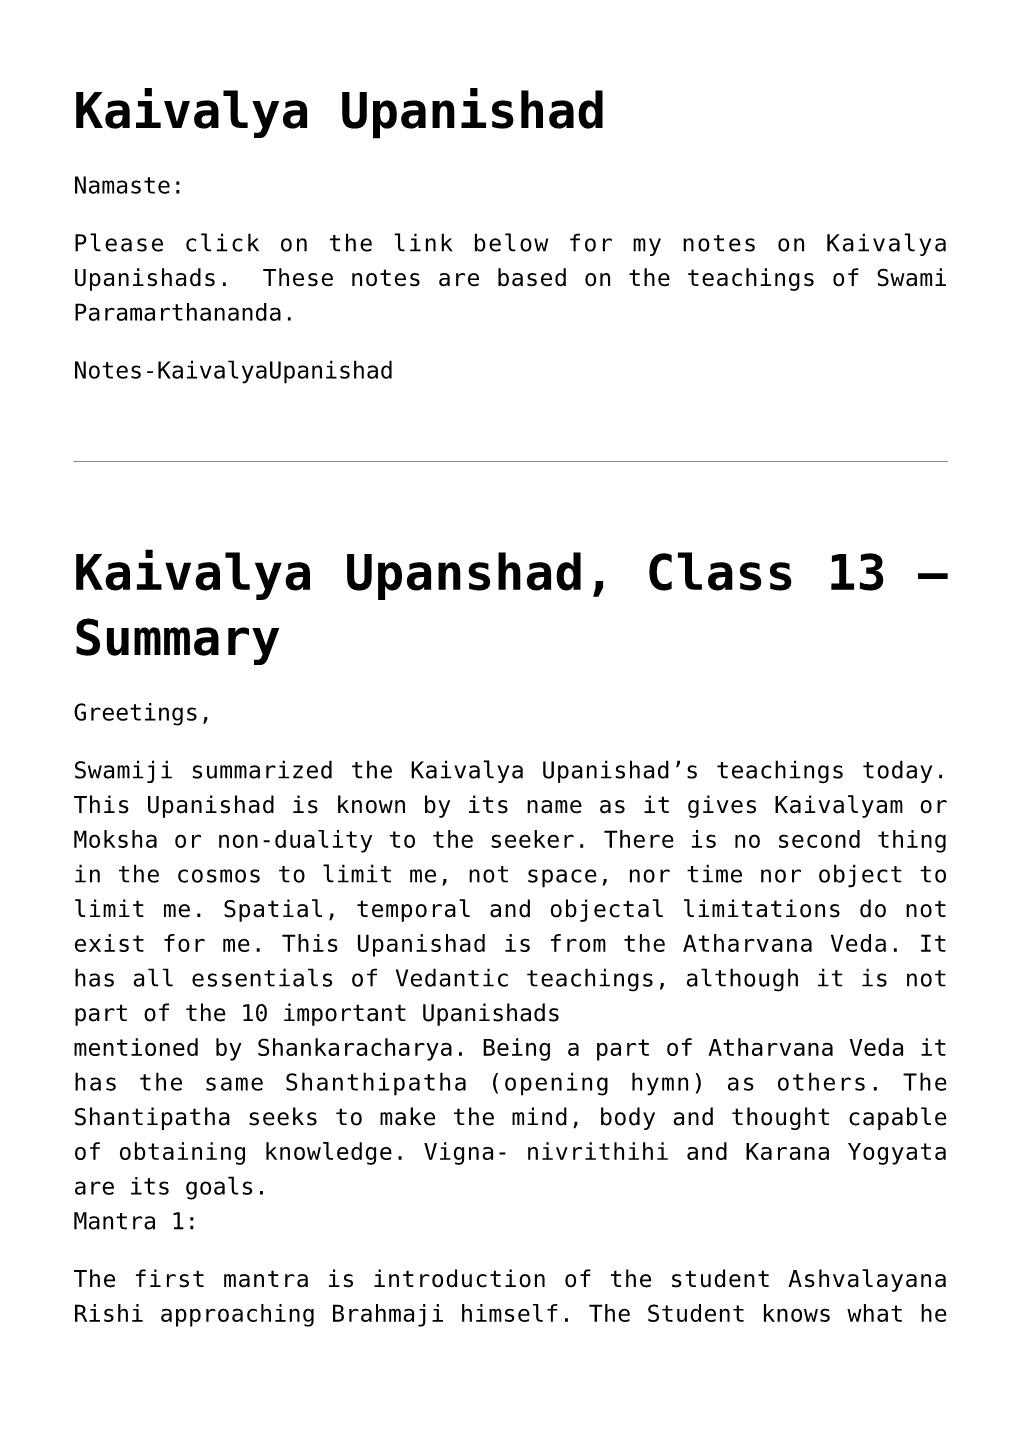 Kaivalya Upanishad,Kaivalya Upanshad, Class 13